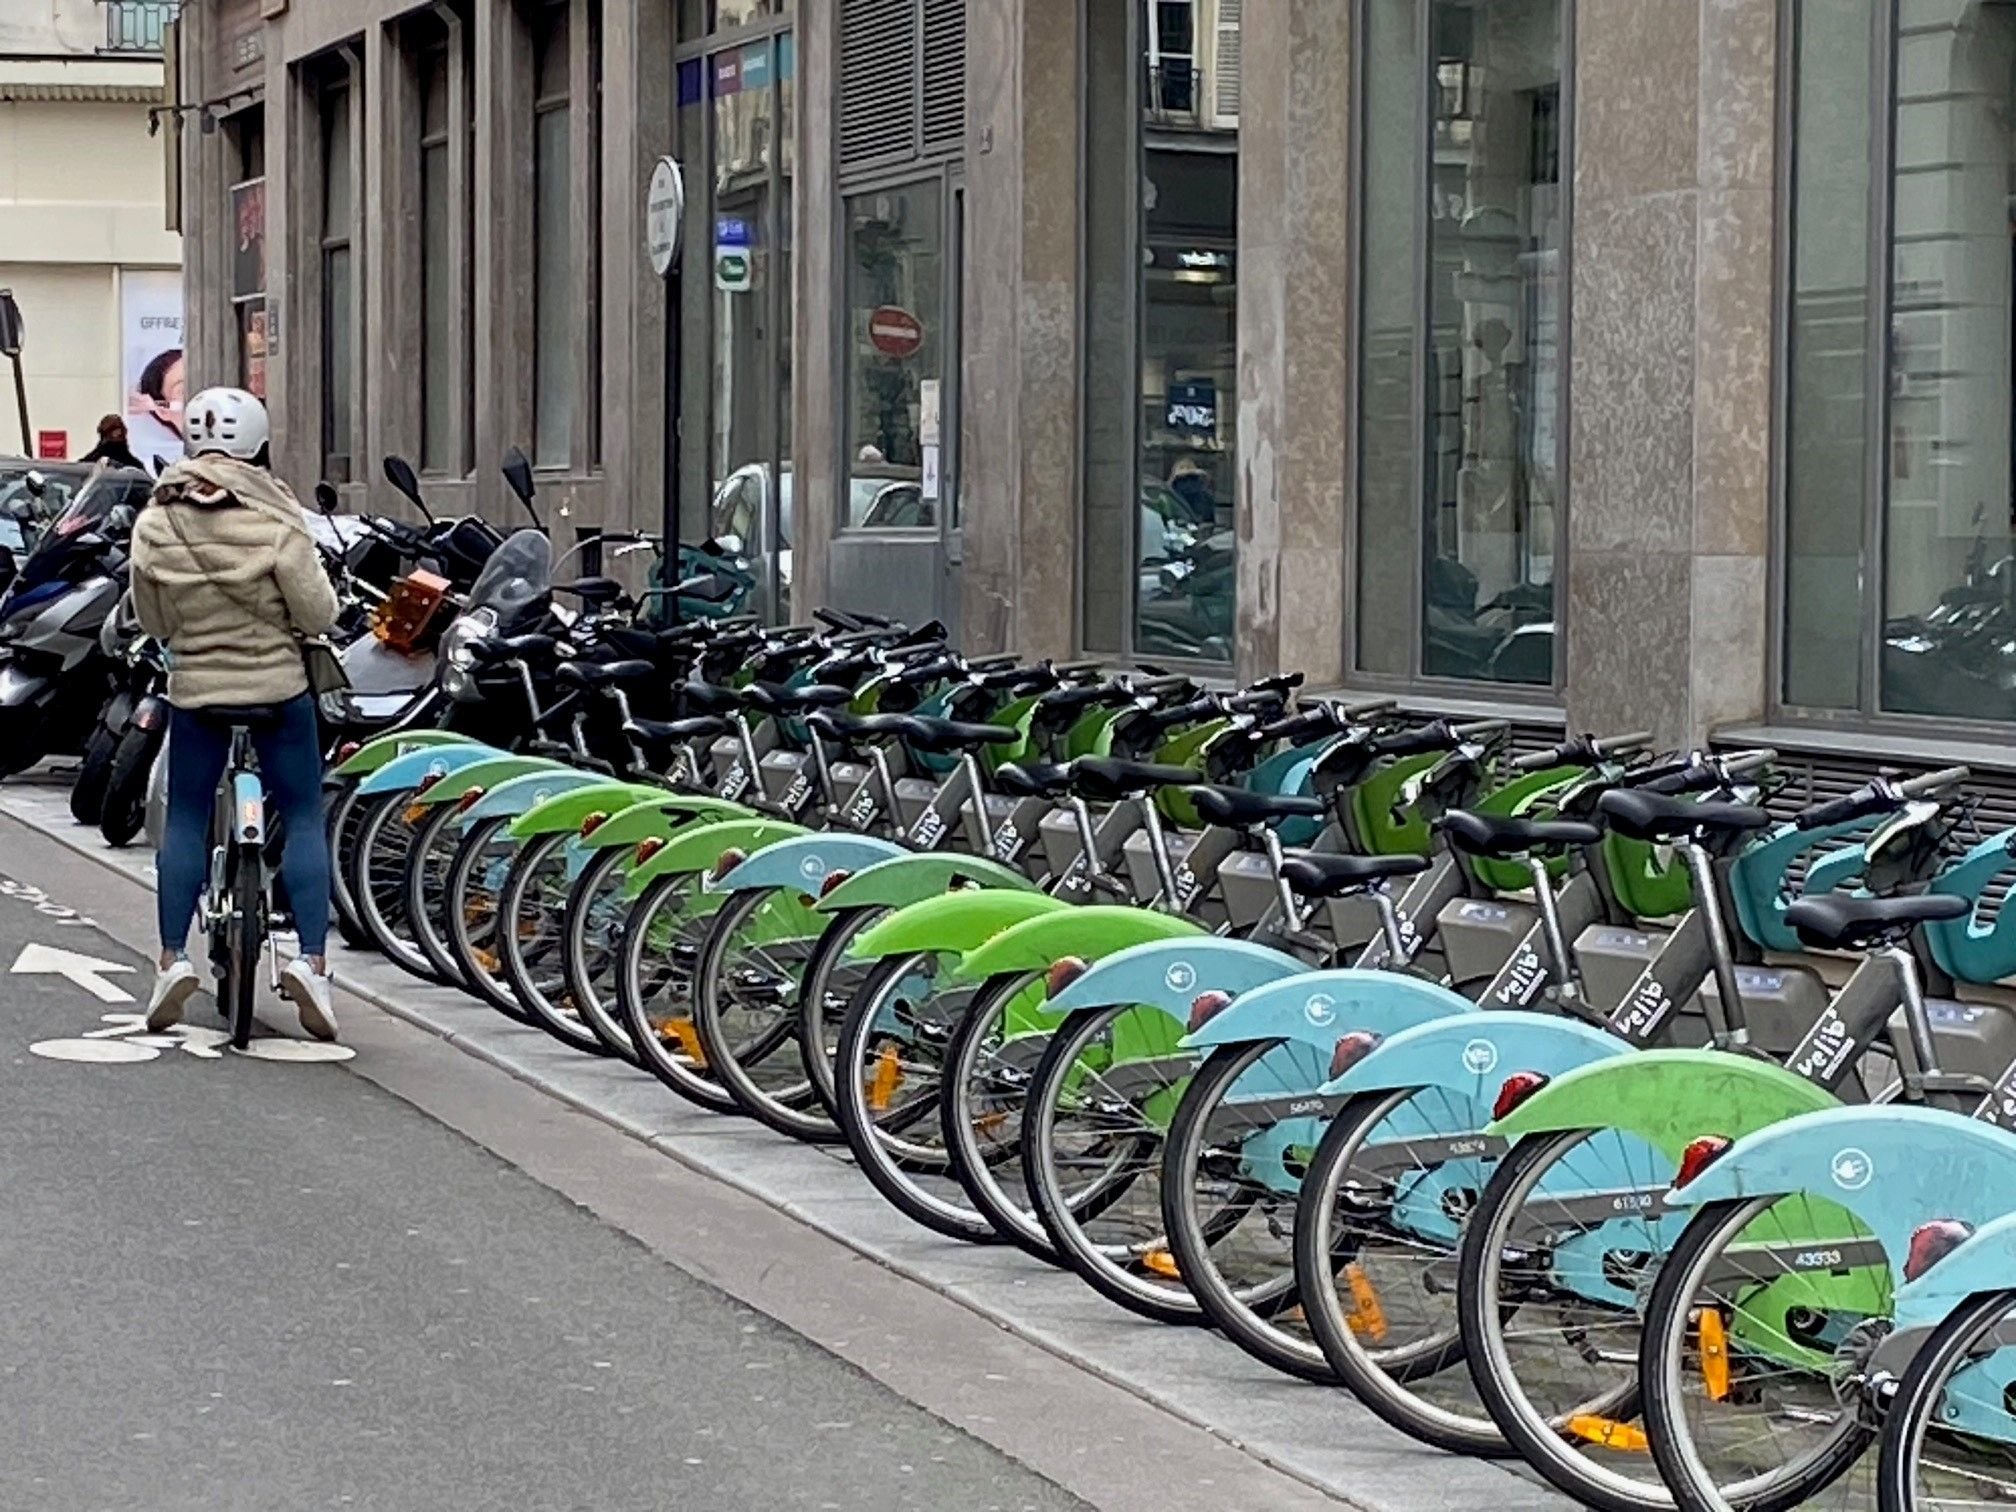 Le service de location de vélos en libre-service a enregistré une hausse de fréquentation de 11% l'an dernier, malgré les critiques. LP/Benoit Hasse